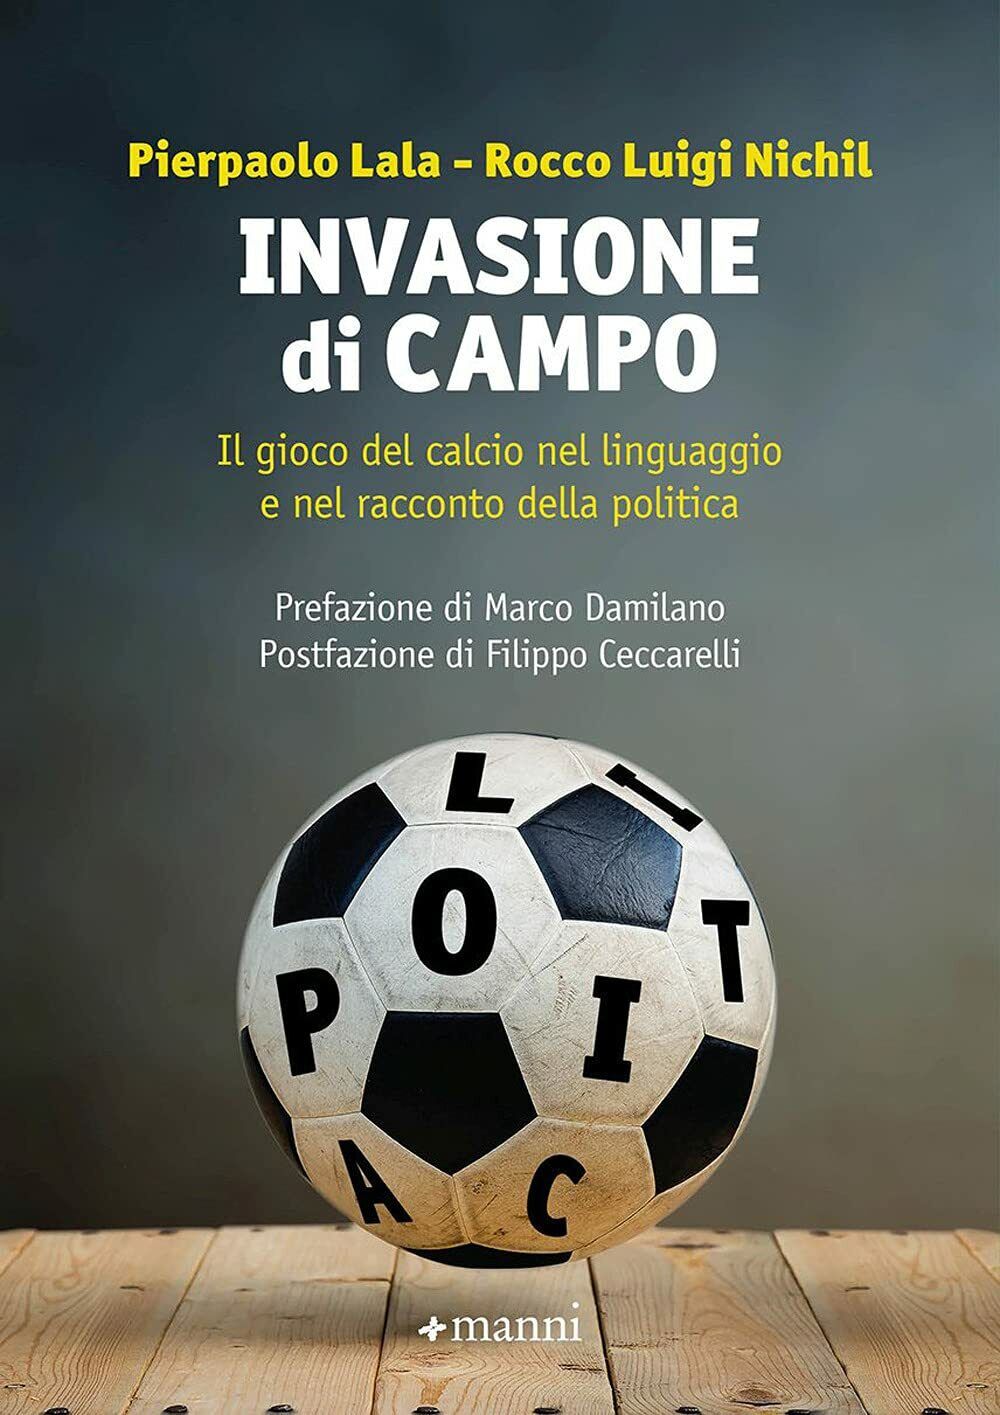 Invasione di campo - Pierpaolo Lala, Rocco Luigi Nichil - Manni, 2021 libro usato